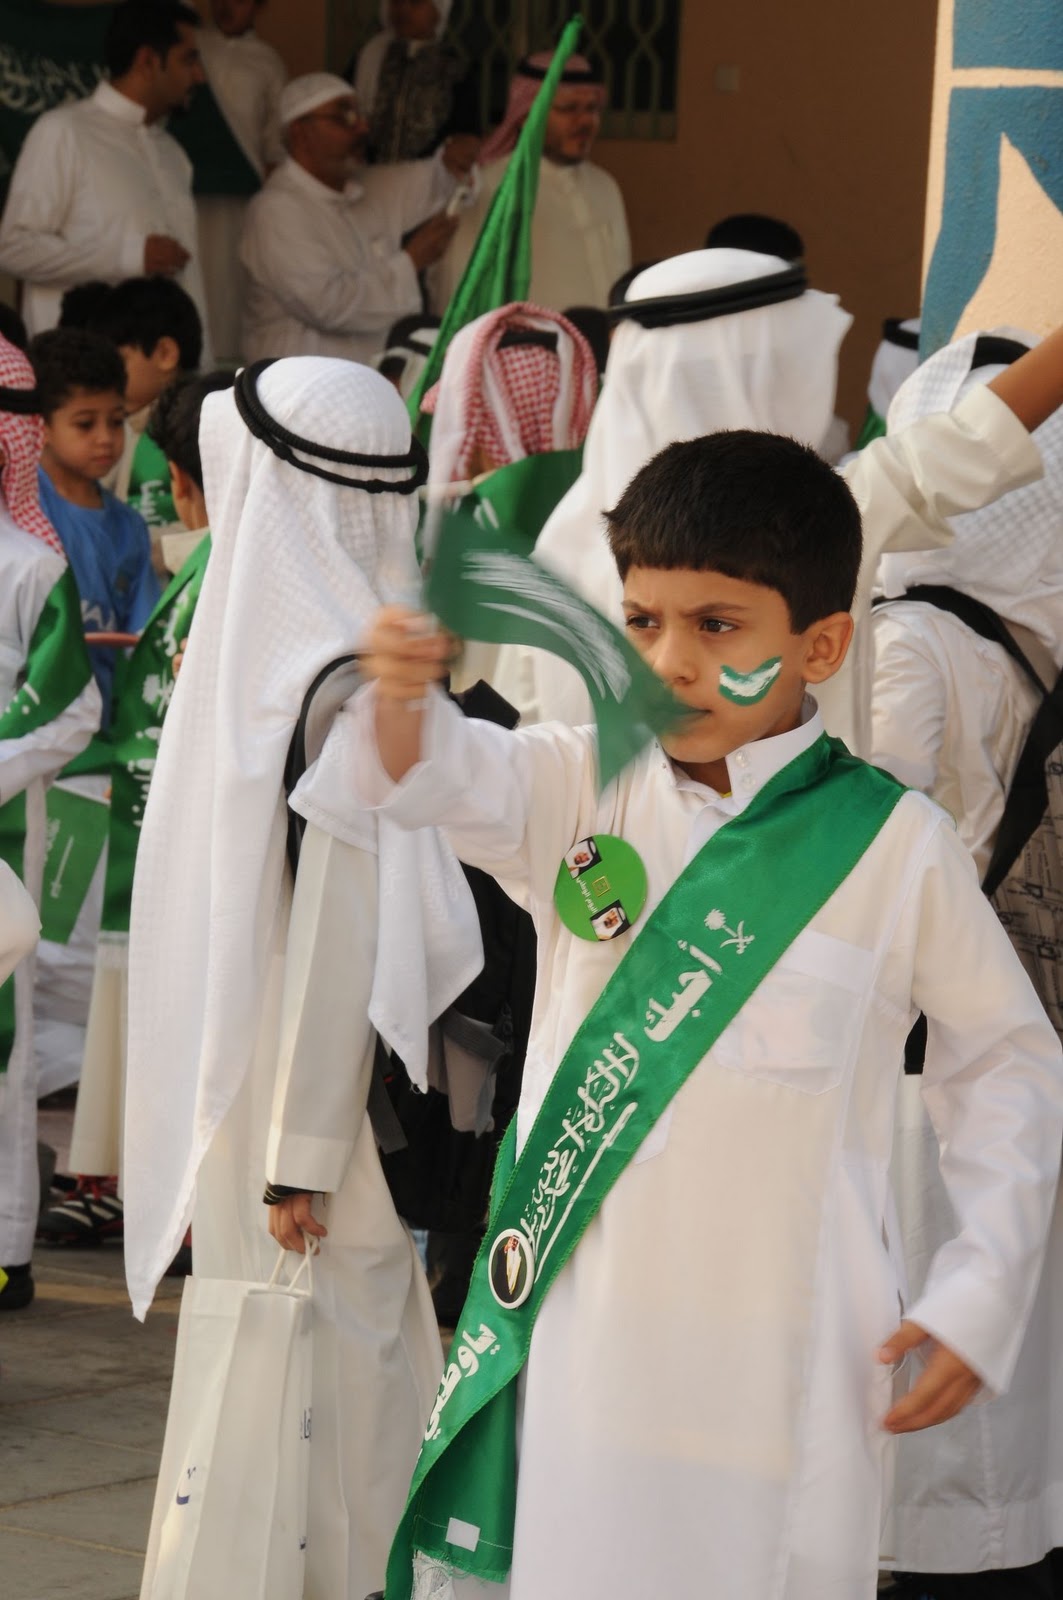 رسالة بمناسبة اليوم الوطني السعودي